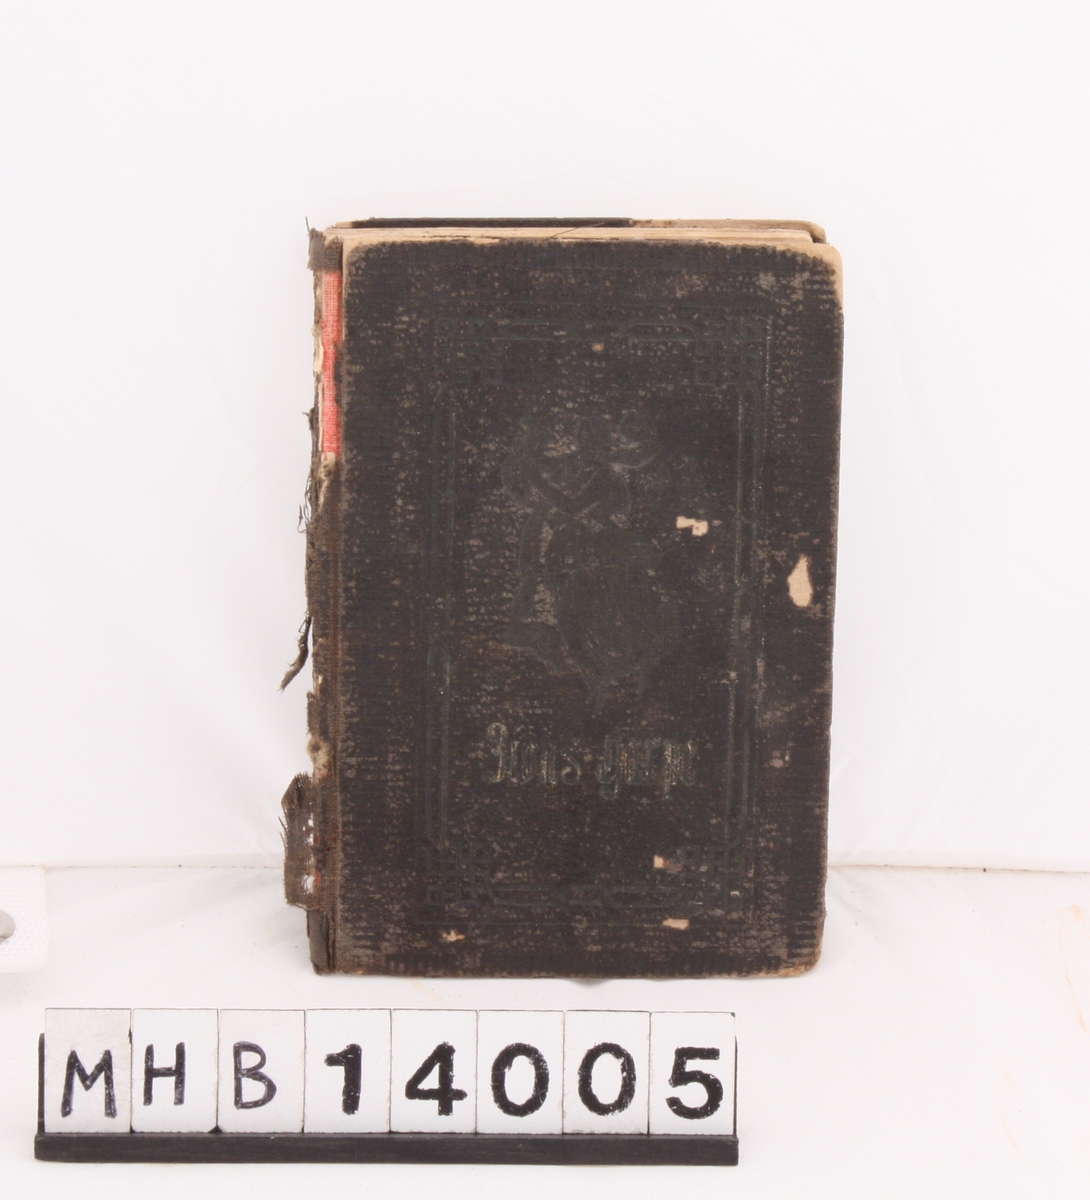 Rektangulær sangbok med svart innbinding. Boka inneholder en samling av evangeliske sanger.